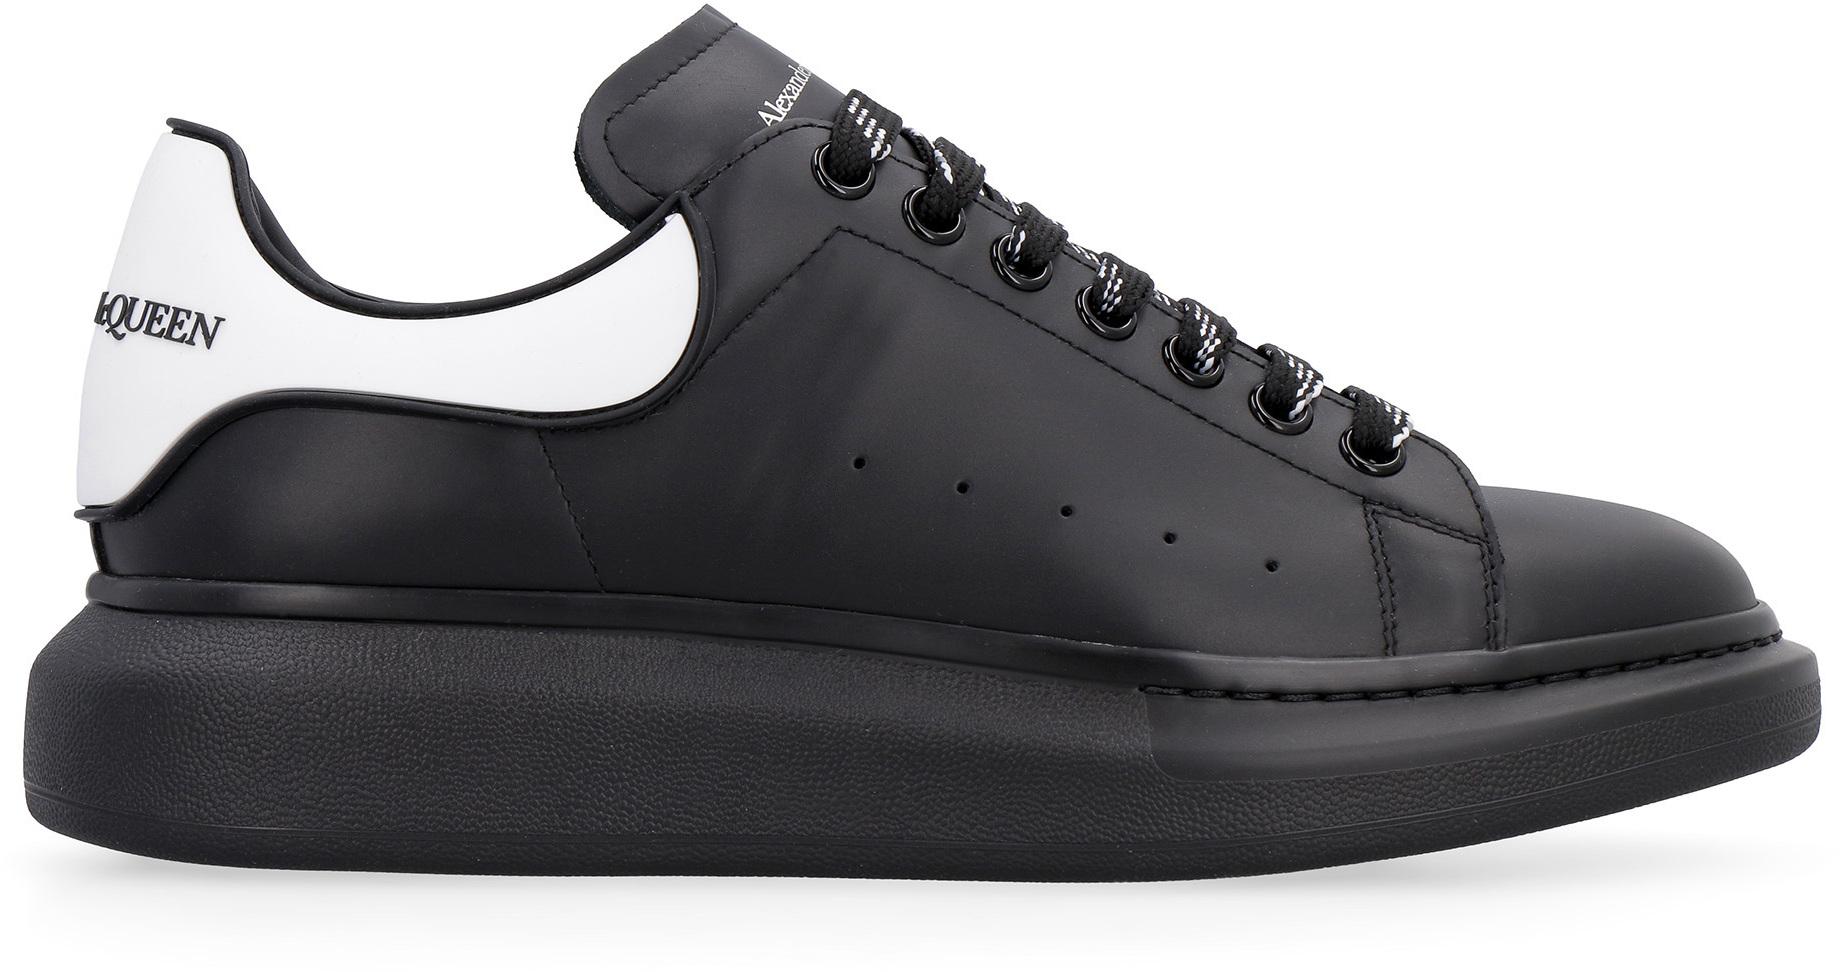 Alexander McQueen Larry Leather Low-top Sneakers in Black for Men - Lyst